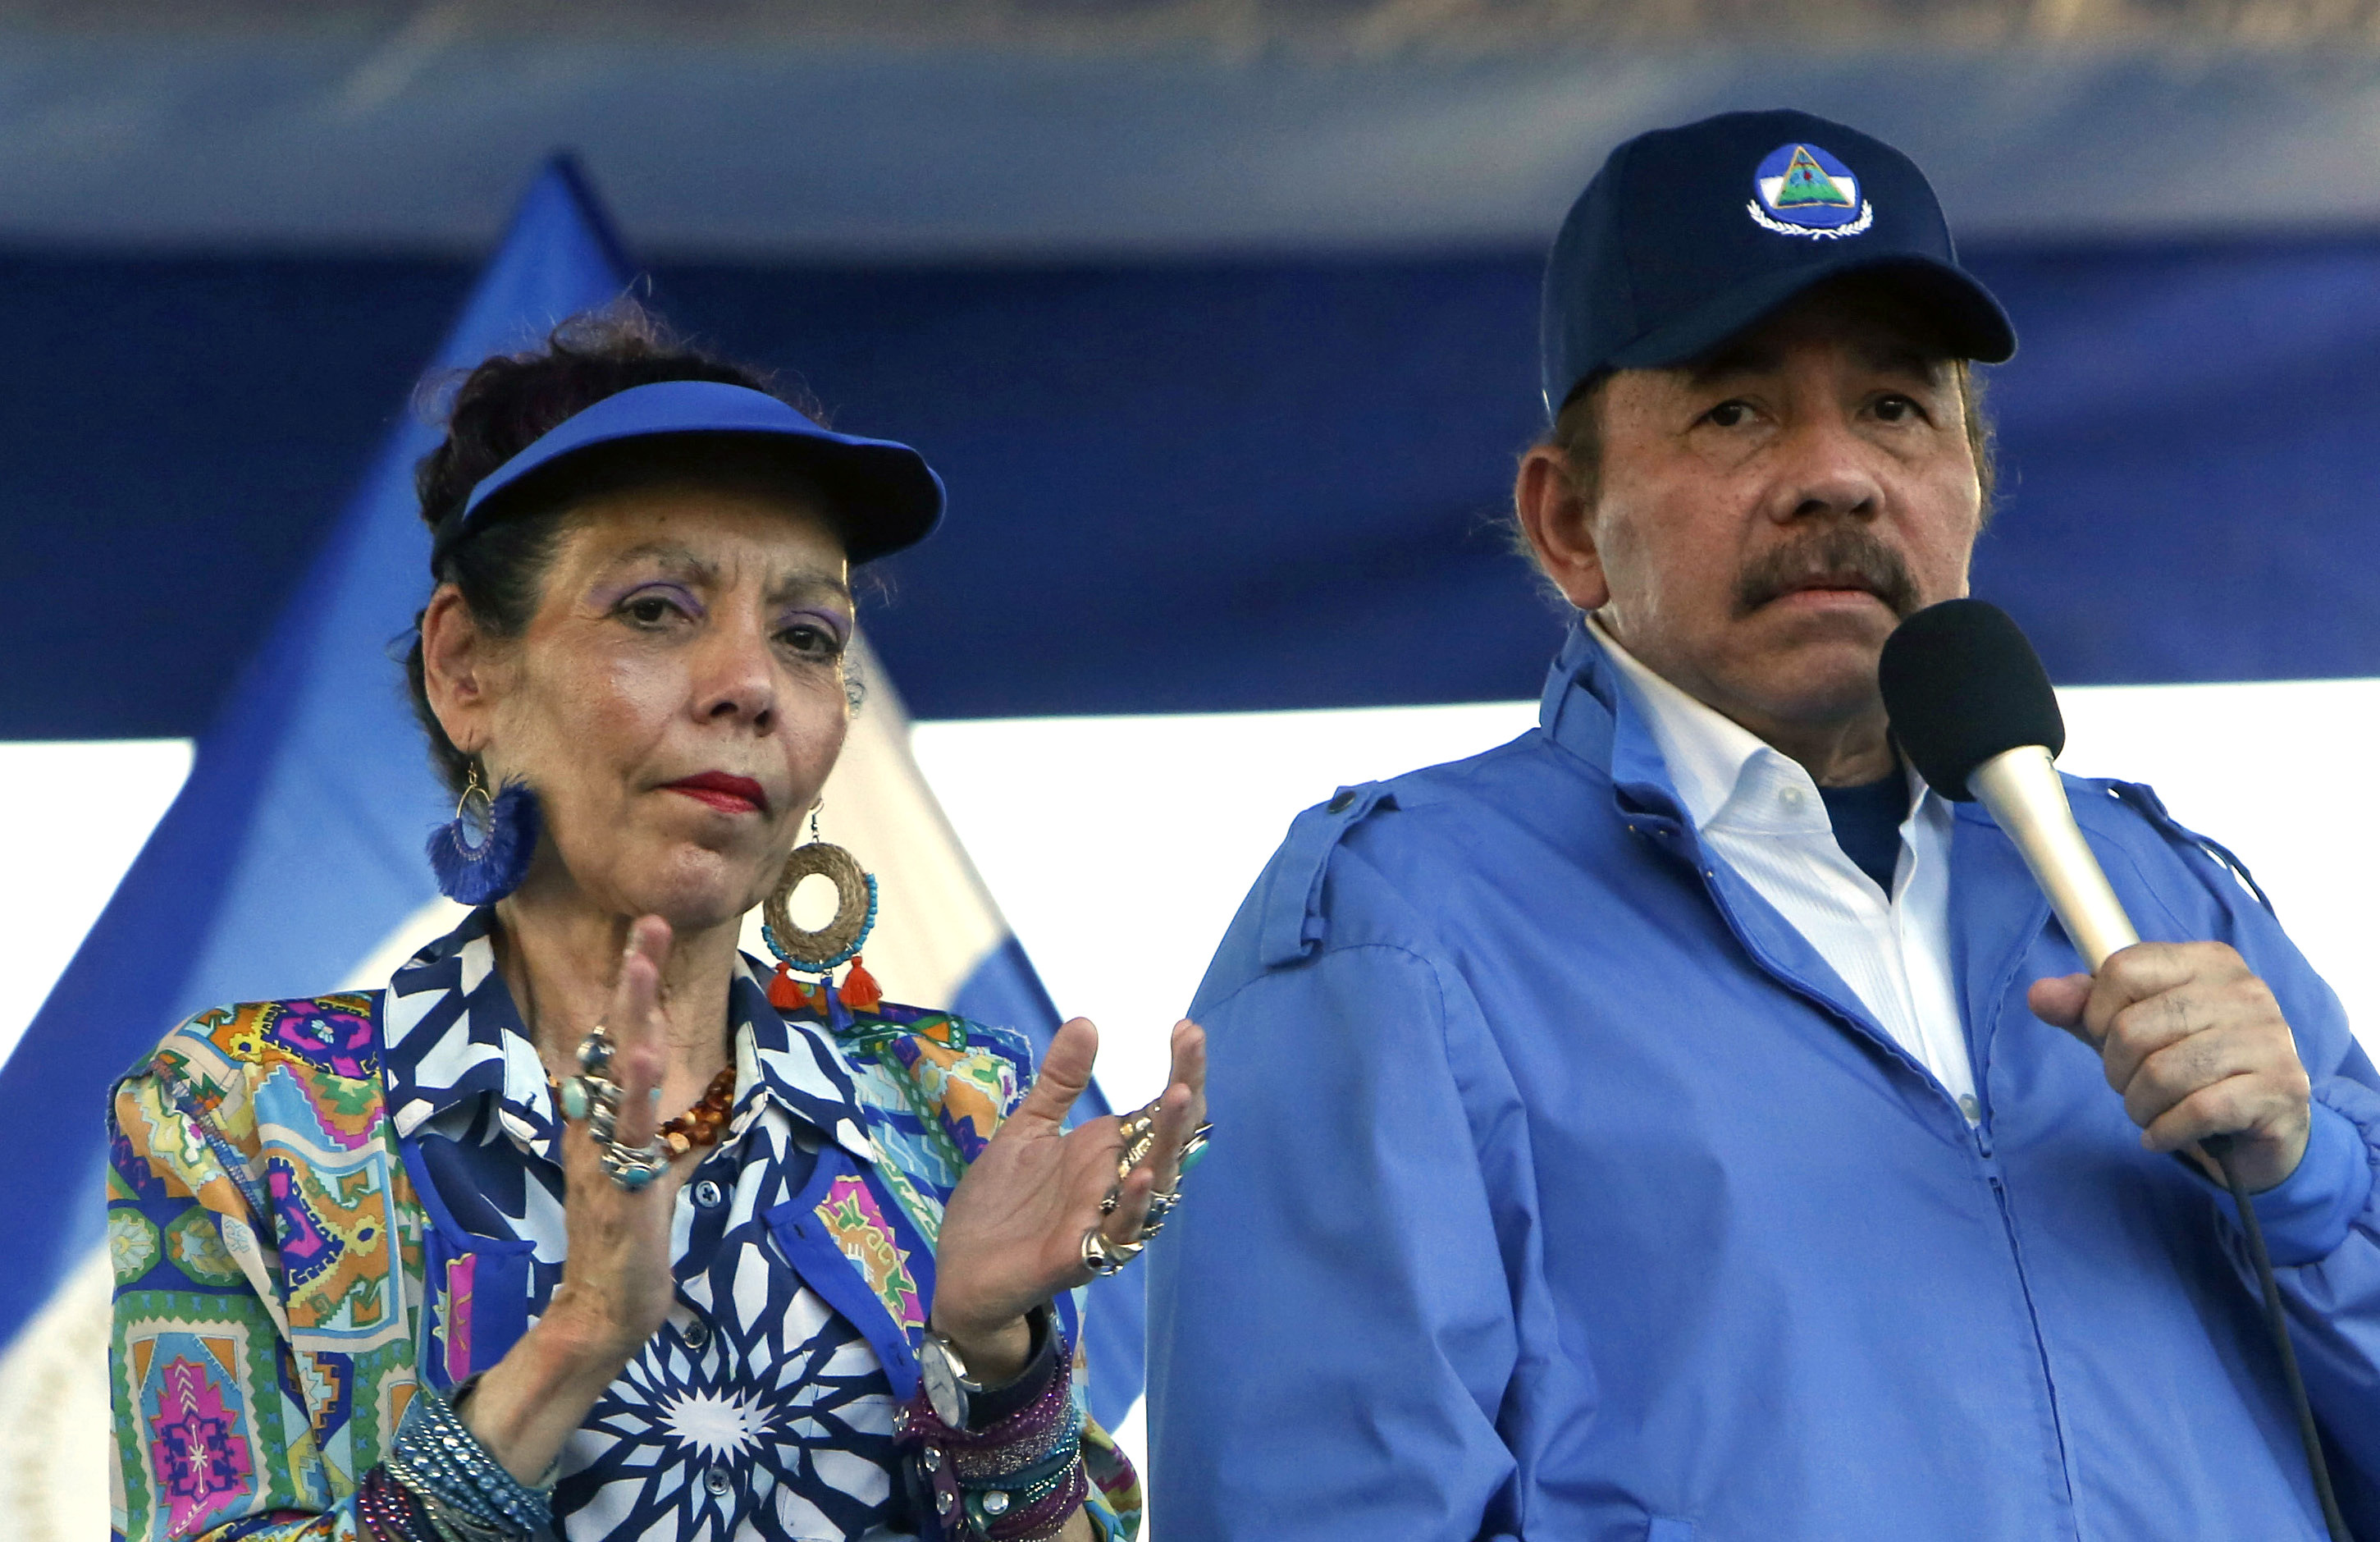 Präsident Daniel Ortega hatte den Sieg gefeiert, aber jetzt sagt seine Frau Vizepräsidentin Rosario Murillo, es sei „Putschmache“ gewesen.